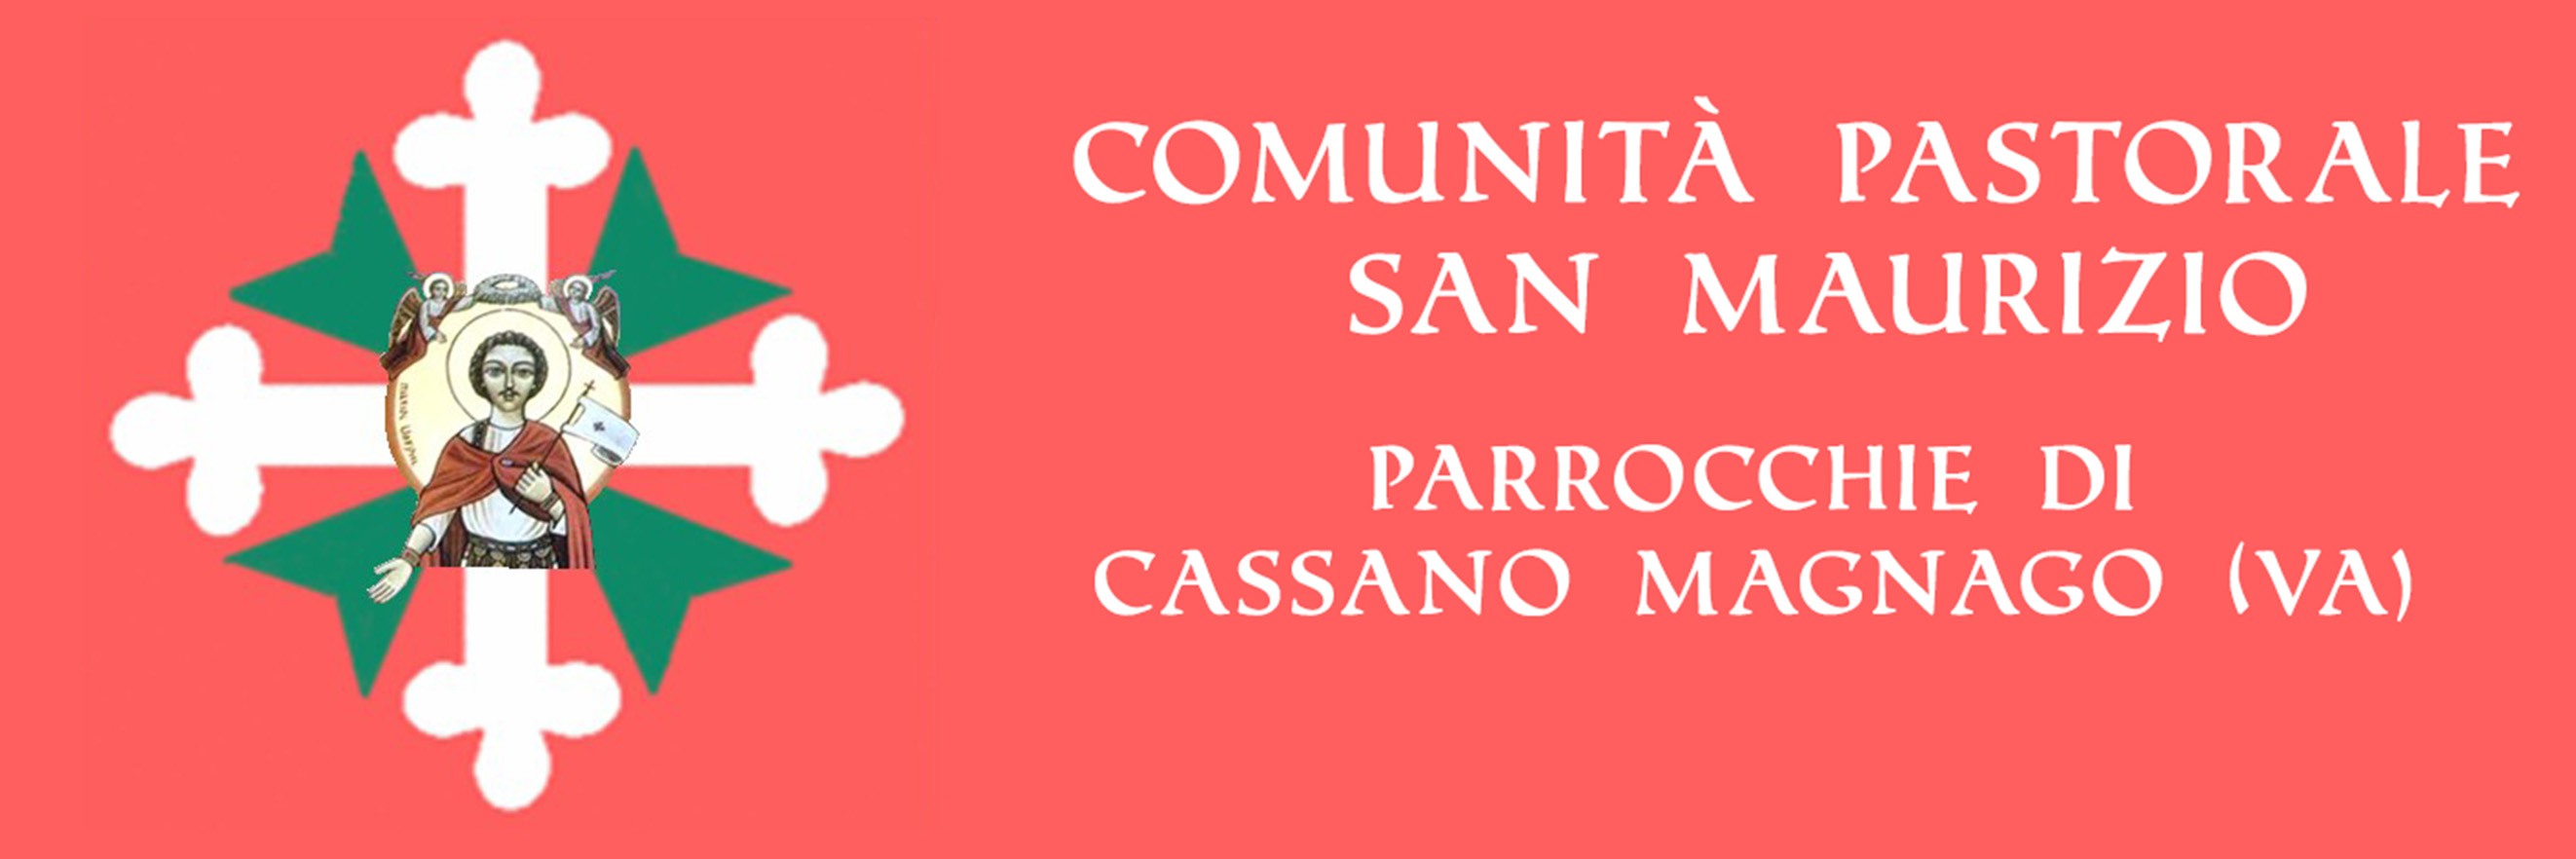 Comunità Pastorale San Maurizio - Cassano Magnago logo